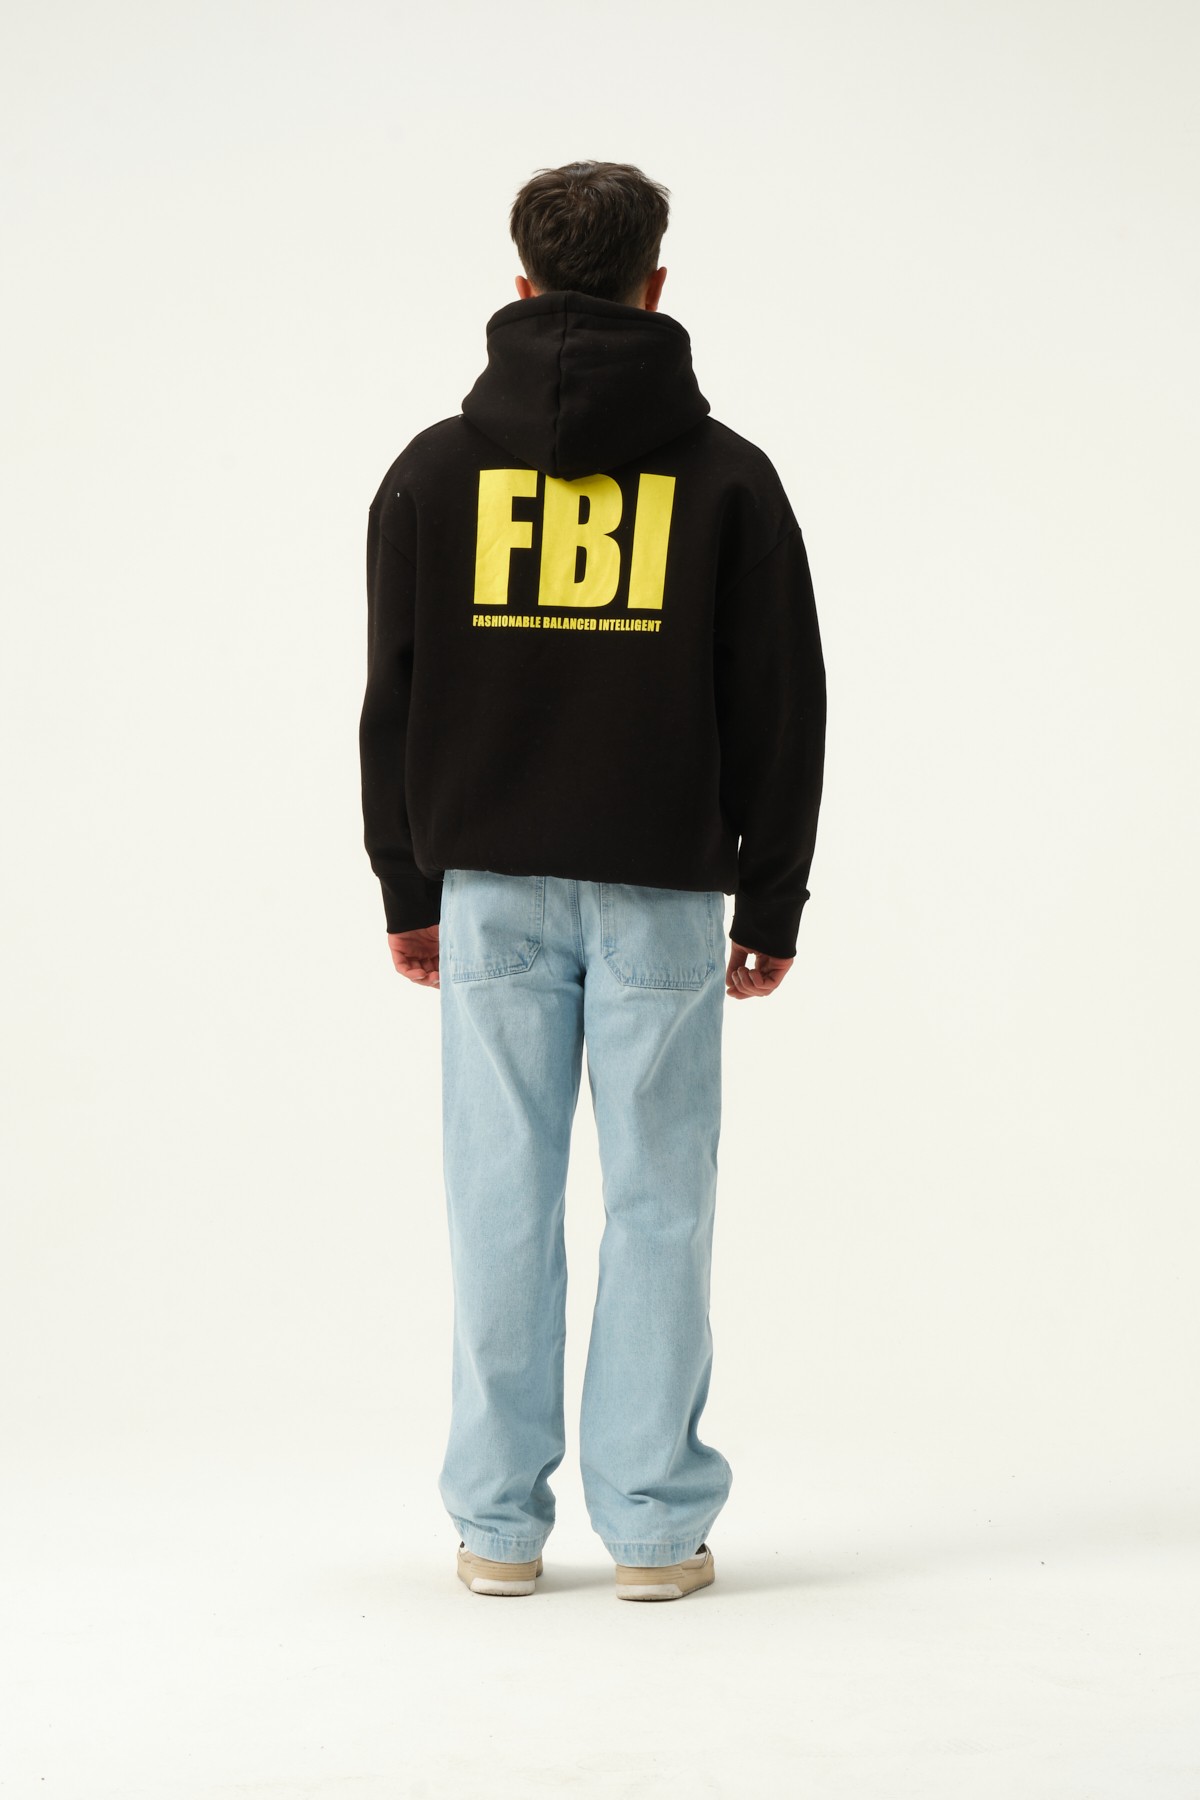 FBI Baskılı Oversize Hoodie - Siyah